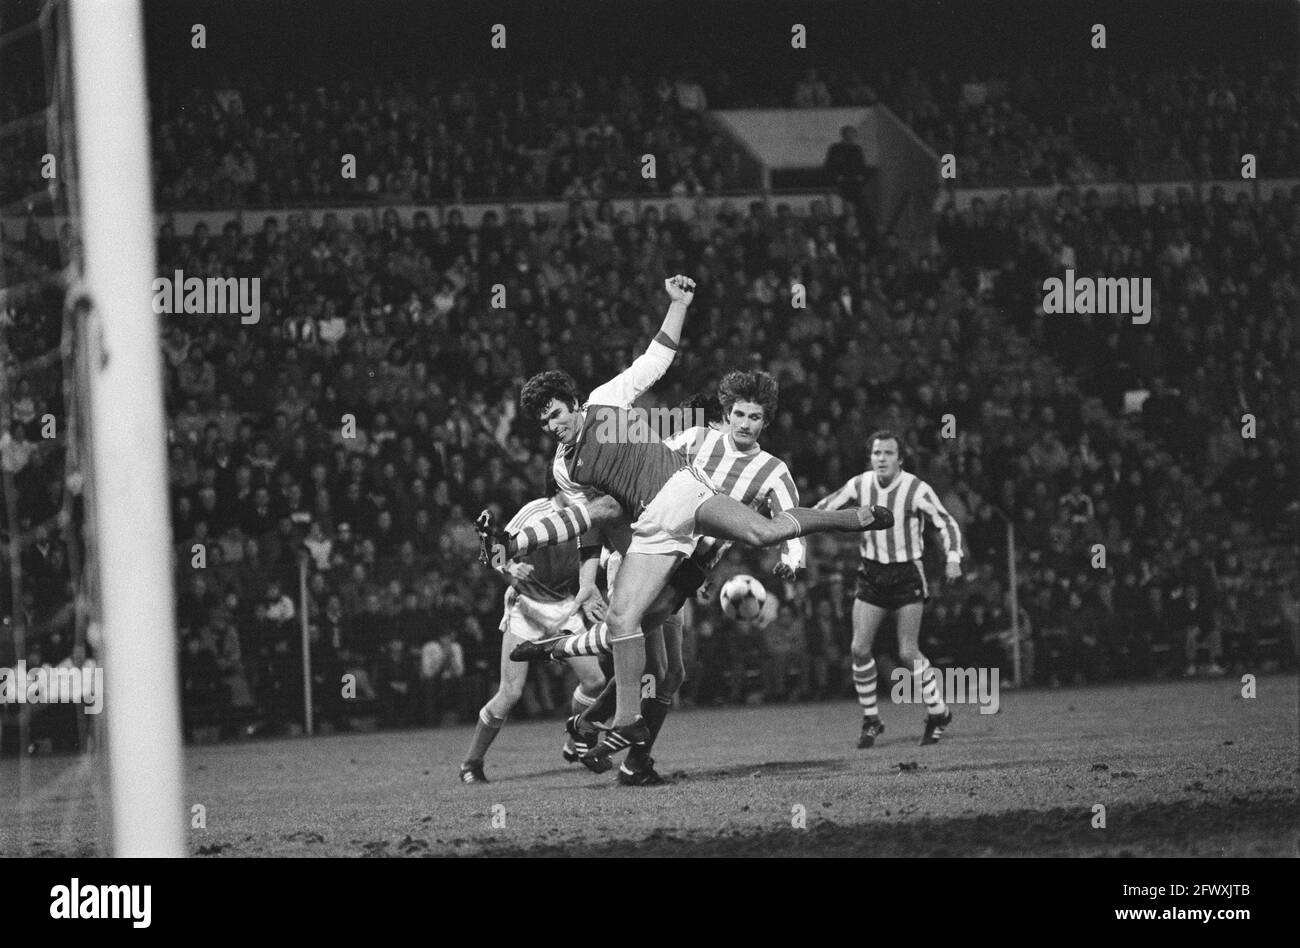 PSV / Feyenoord 1-2. Wim van Hanegem im Duell mit PSV-Spielern, 13. März 1982, Sport, Fußball, Niederlande, 20th Century Presseagentur Foto, Nachrichten zu Stockfoto